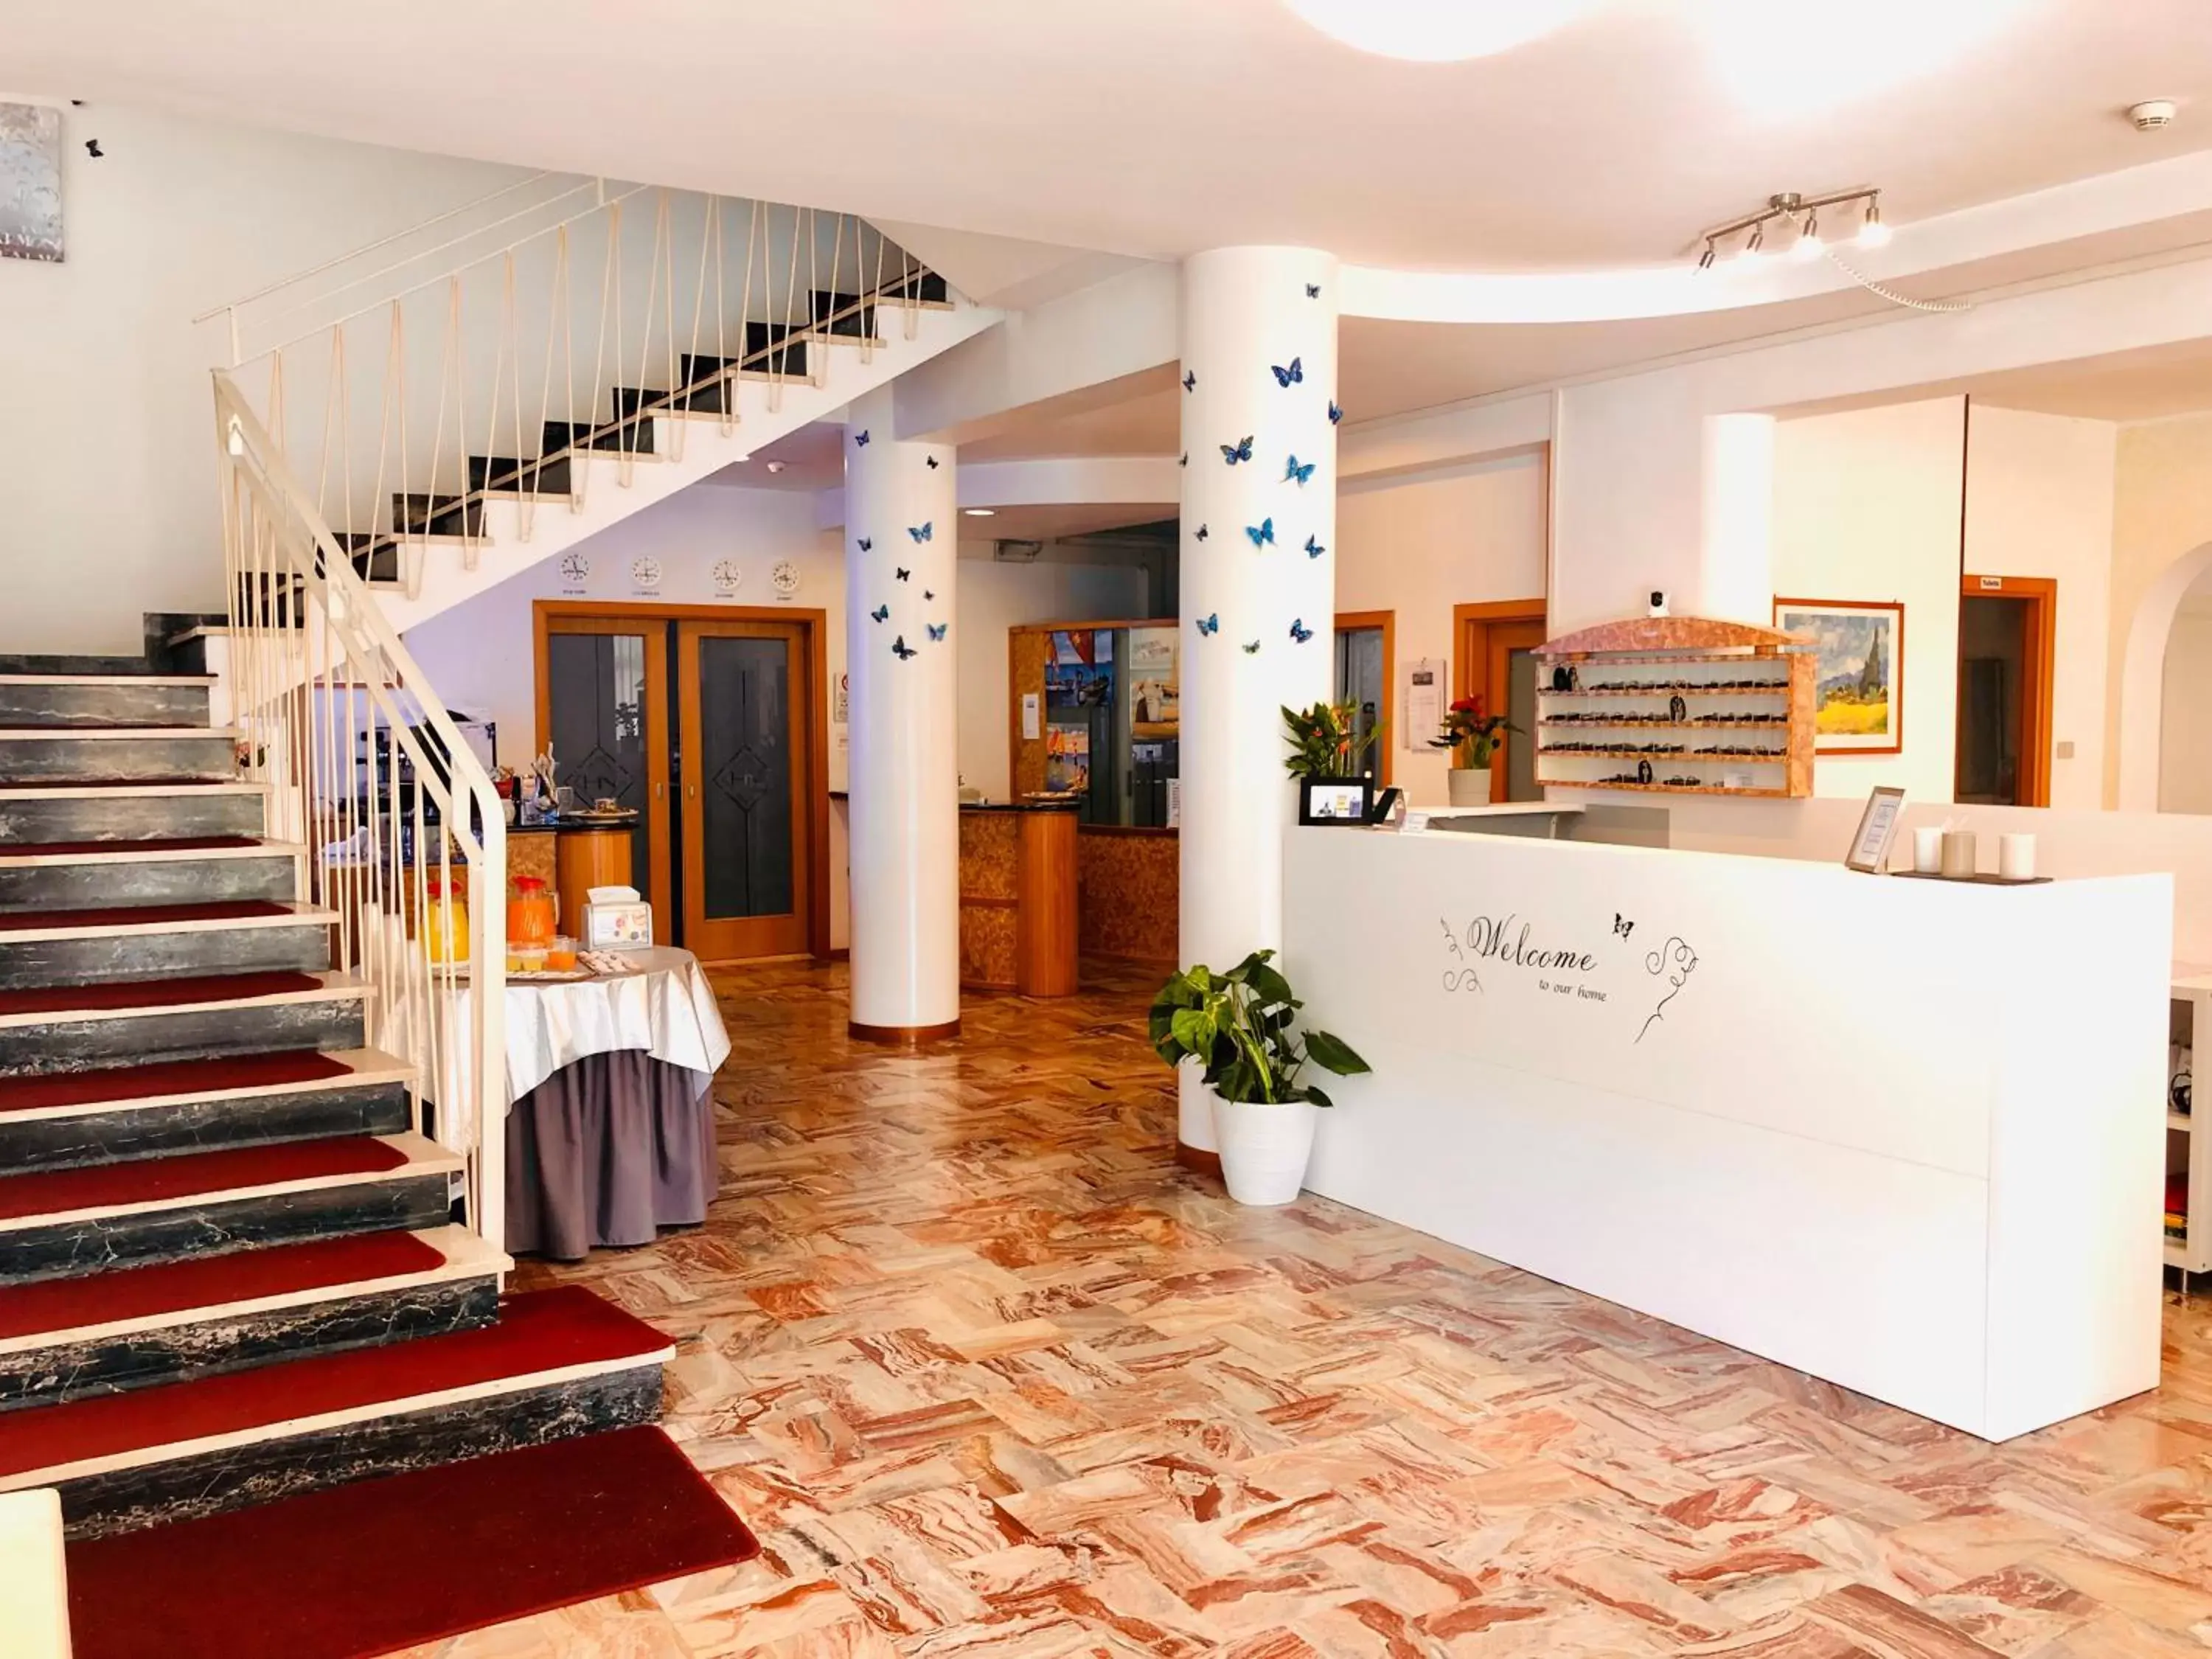 Lobby or reception, Lobby/Reception in Hotel Niagara Riccione